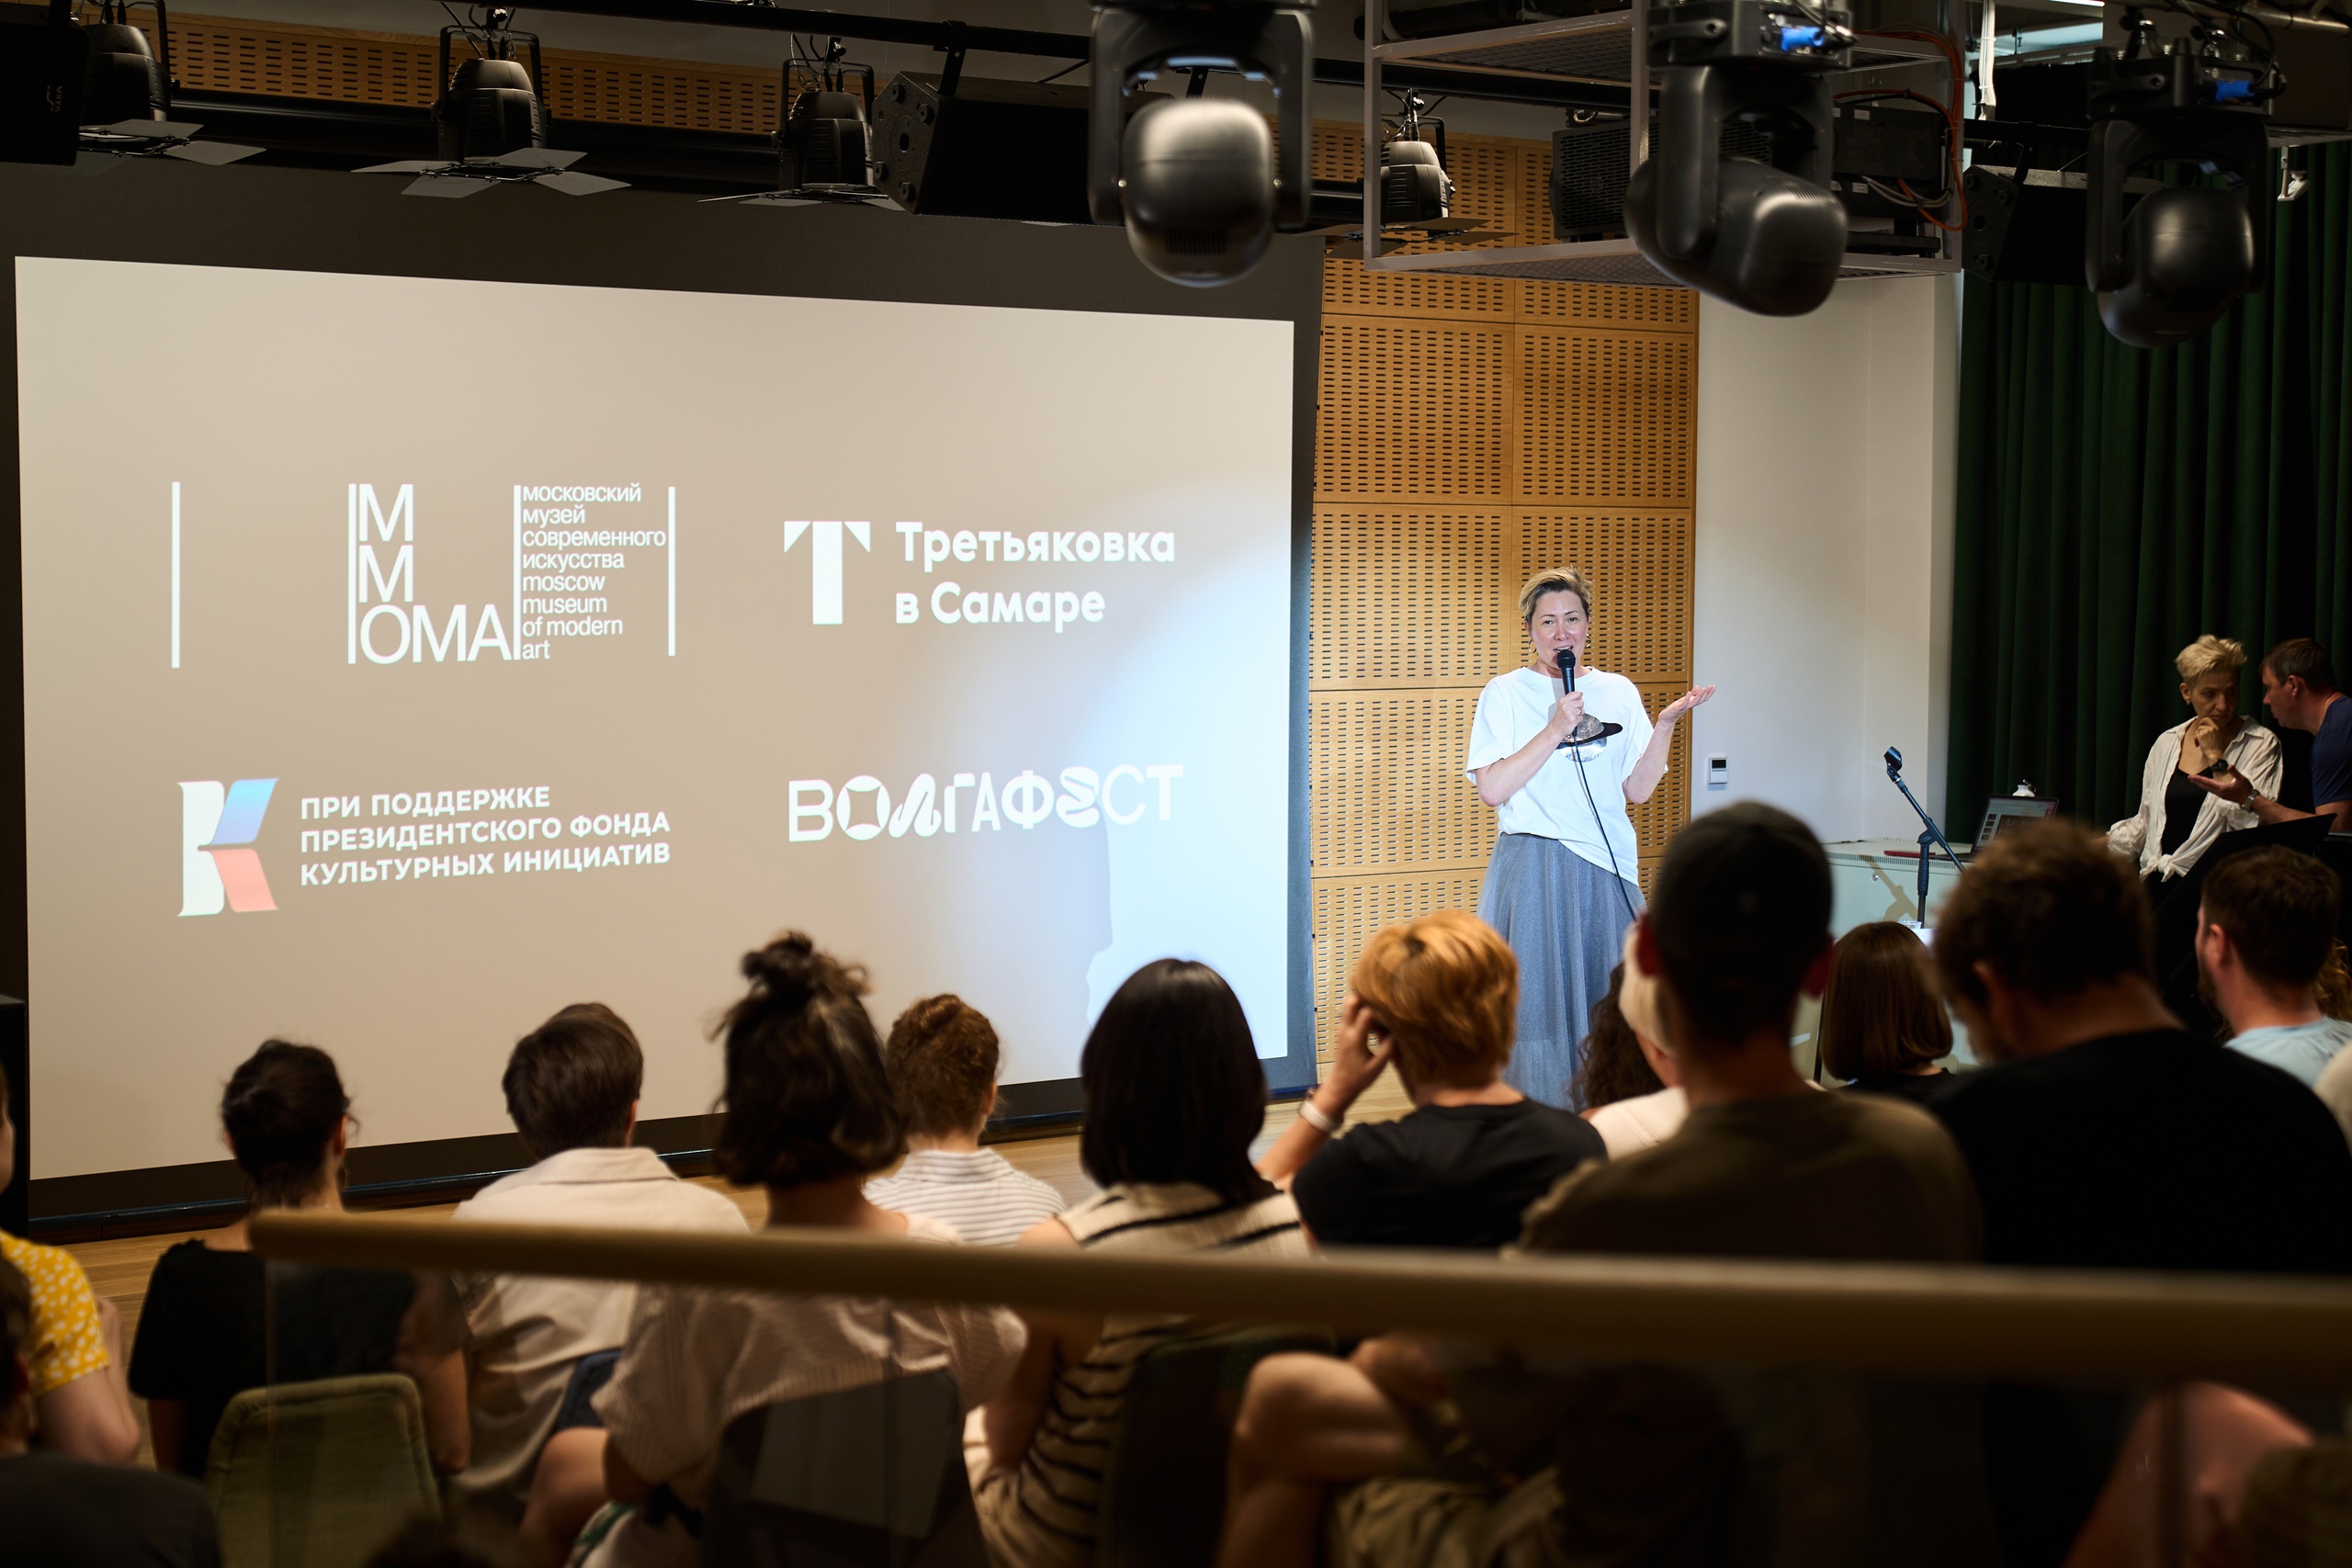 В кинозале Третьяковки в Самаре прошла презентация проектов лаборатории городской среды «Выход в город»